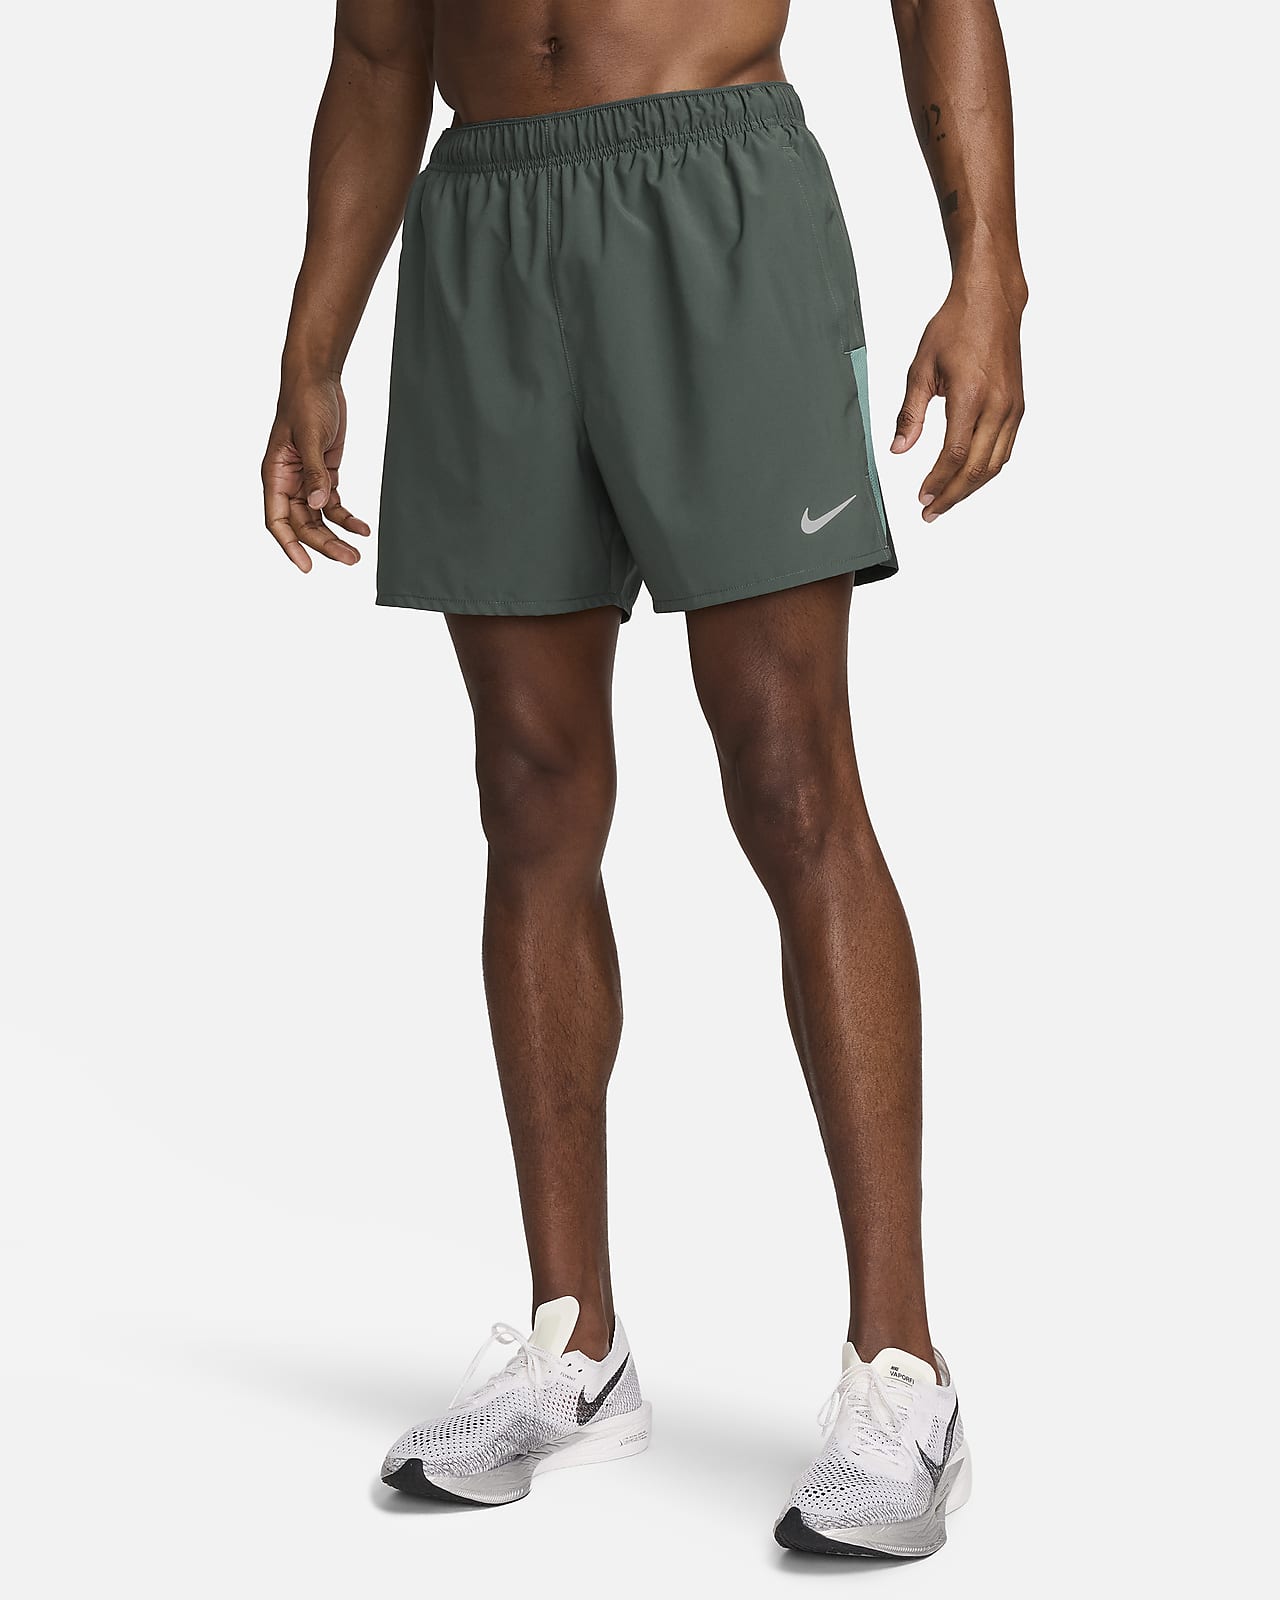 Nike Challenger Dri-FIT 13 cm-es, belső rövidnadrággal bélelt férfi futórövidnadrág